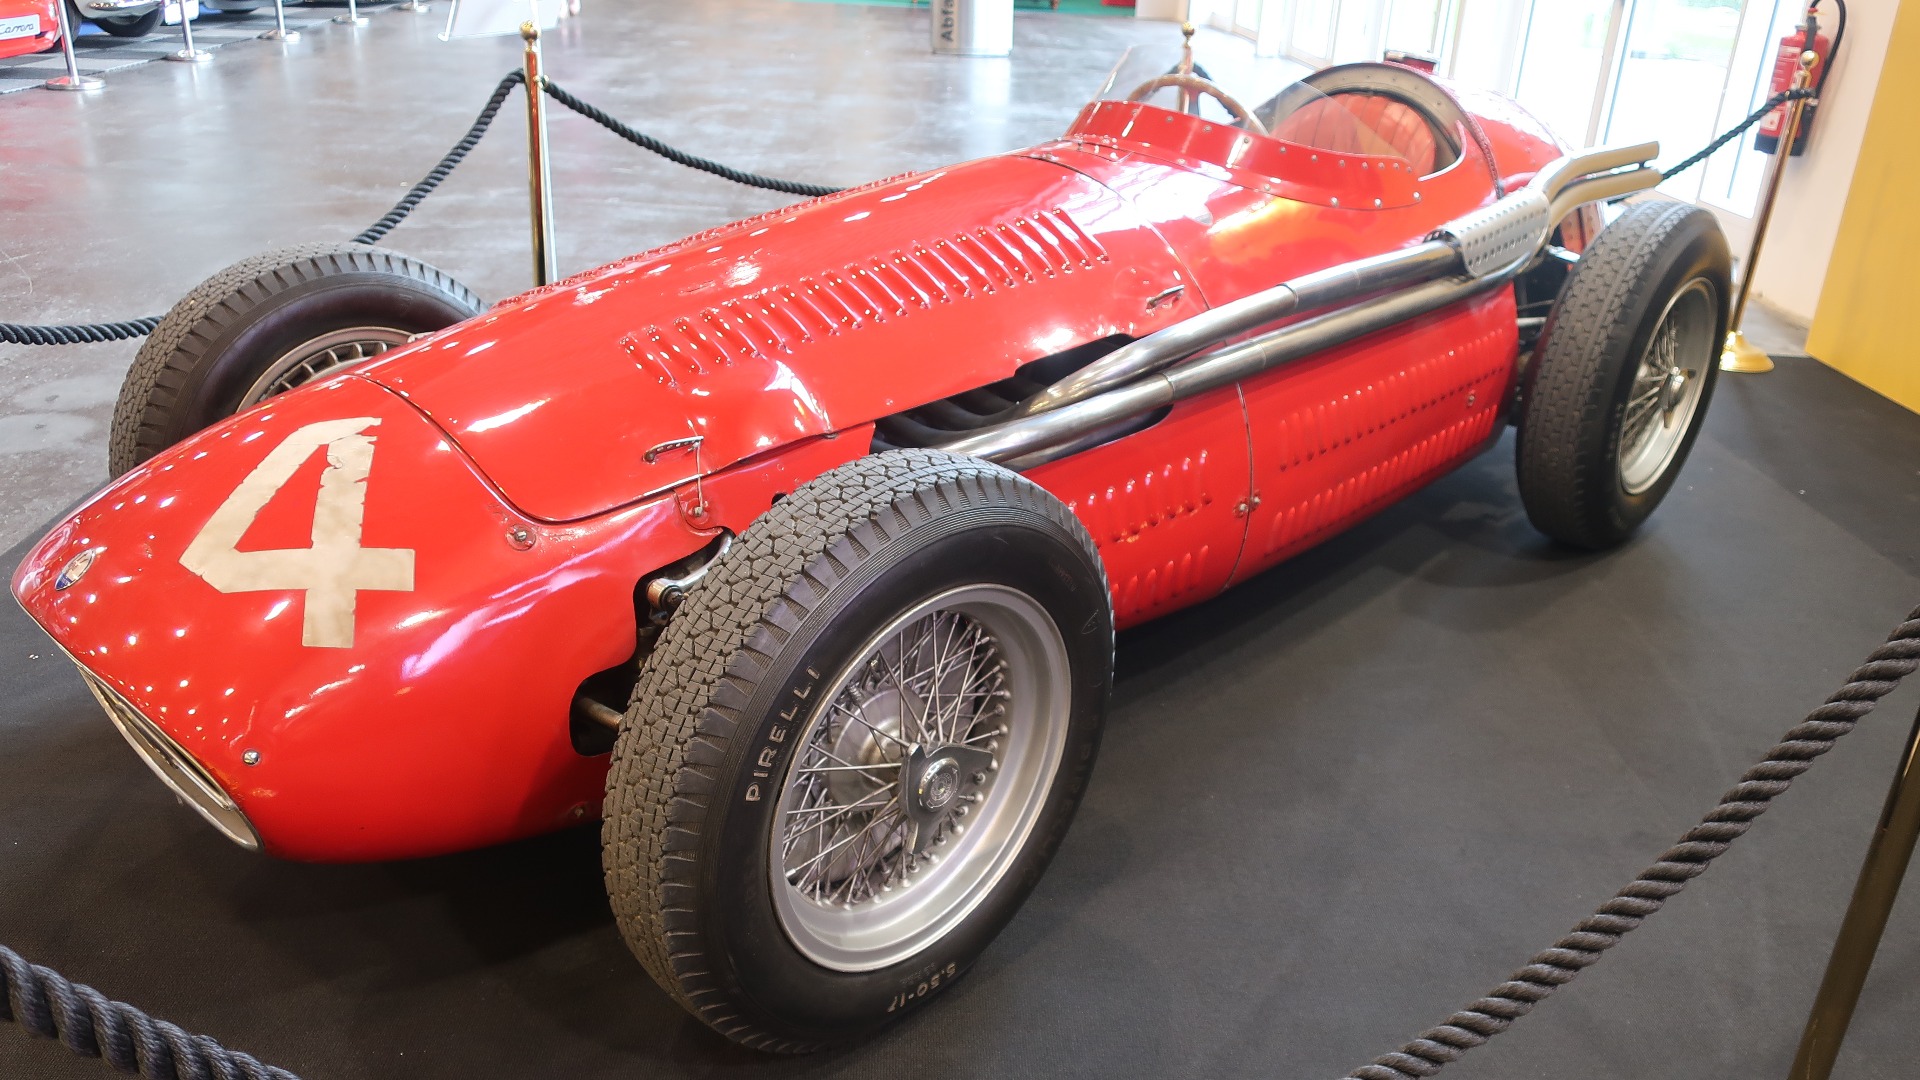 En virkelig godbit lånt fra bilmuseet i Torino Fangios Maserati 250F som han ble Formel 1 verdensmester med i 1957.